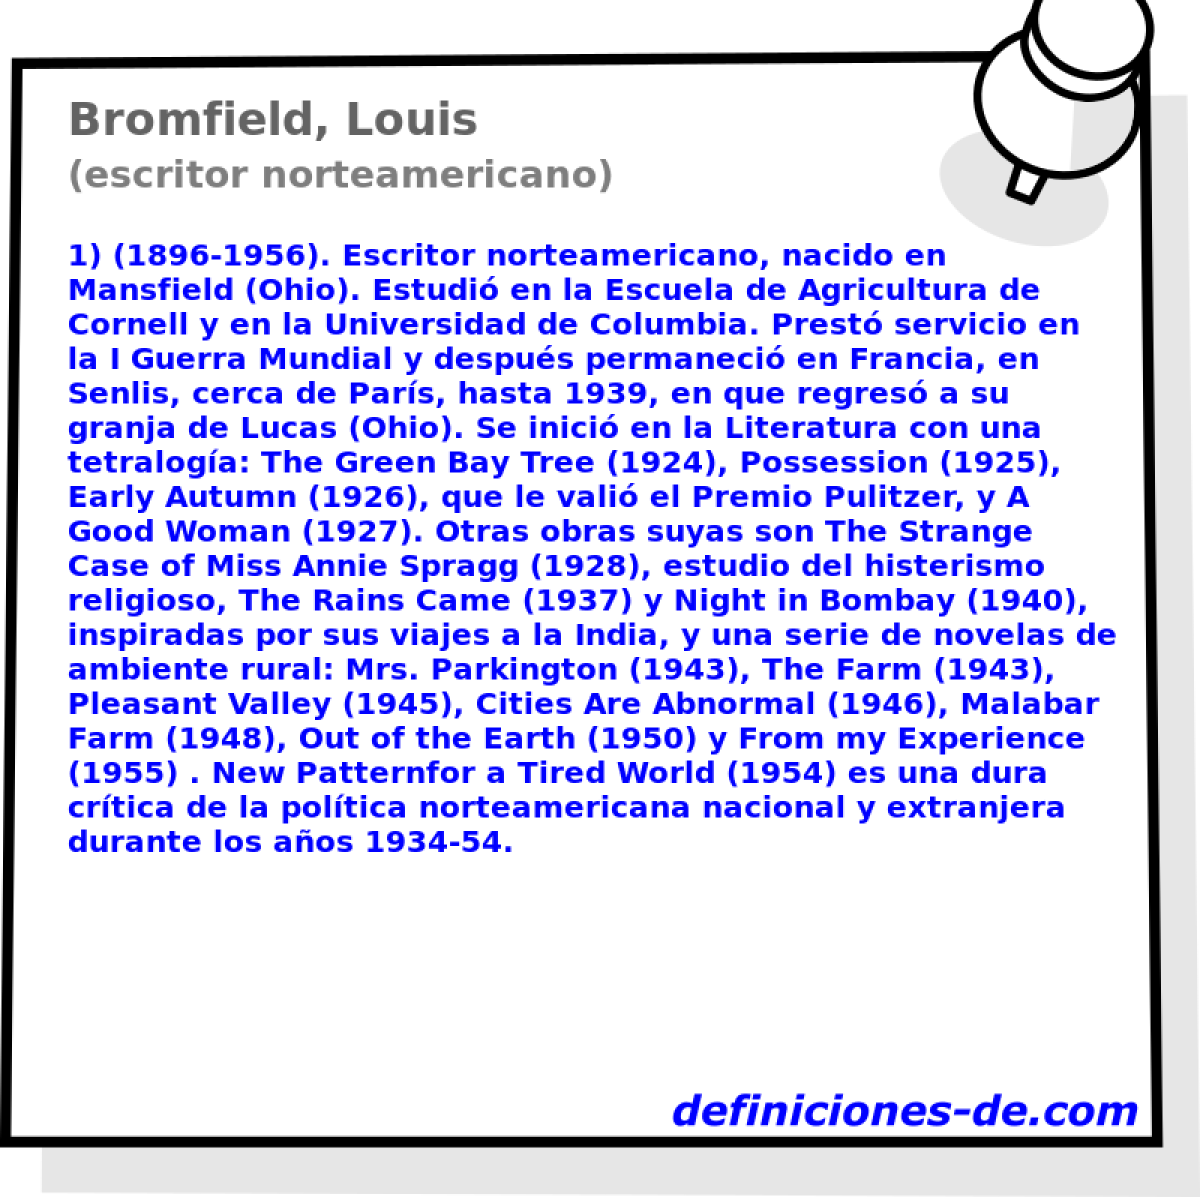 Bromfield, Louis (escritor norteamericano)